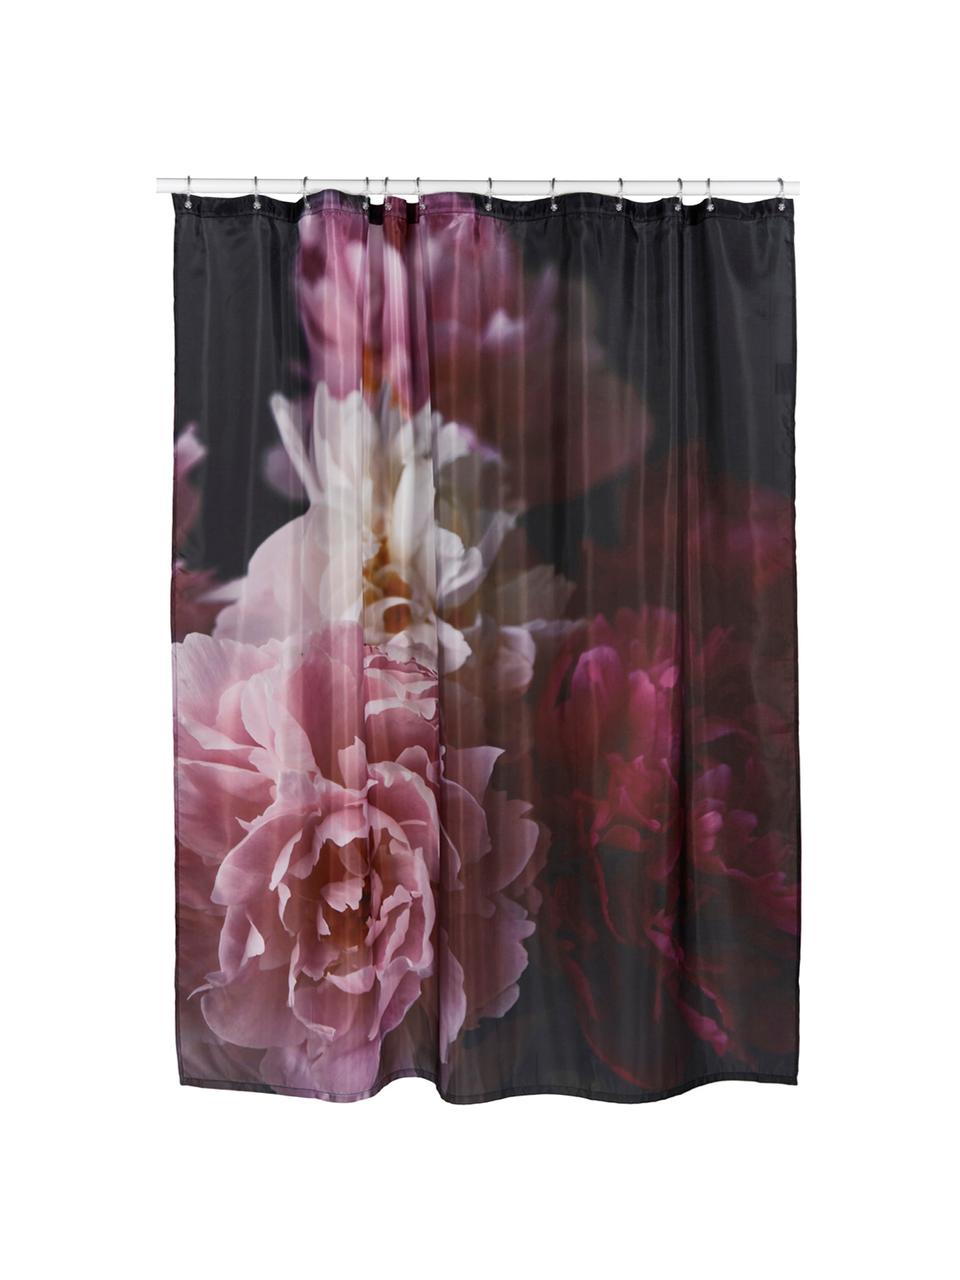 Duschvorhang Rosemarie mit Blumen-Muster, 100% Polyester
Wasserabweisend, nicht wasserdicht, Schwarz, Rosatöne, B 180 x L 200 cm